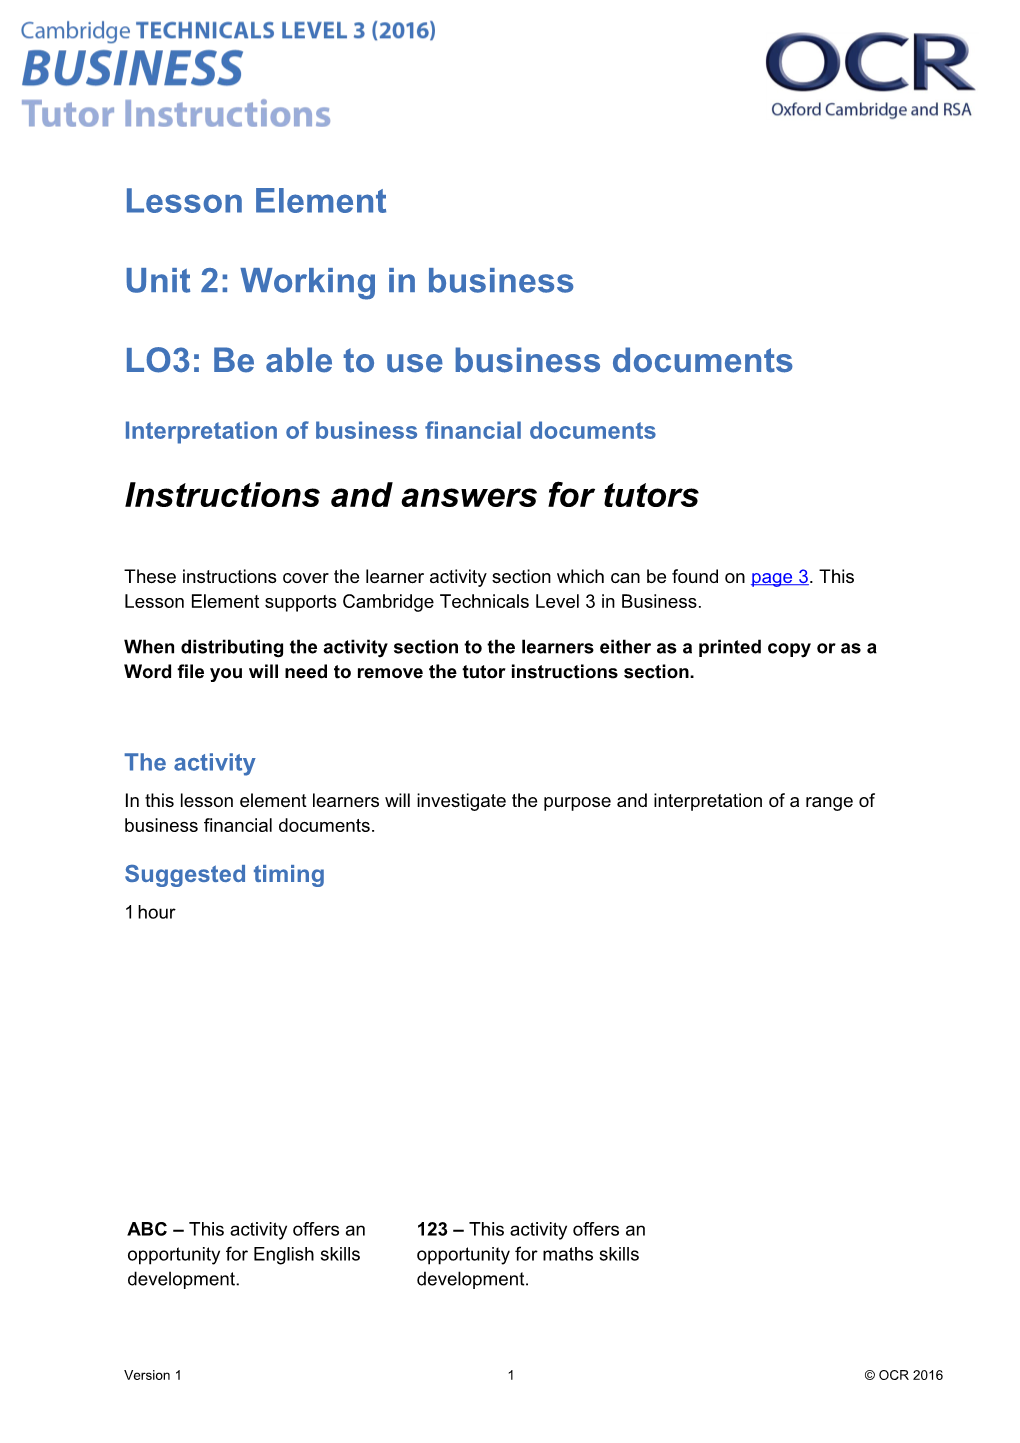 Cambridge Technicals Level 3 Business U02 Lesson Element 2